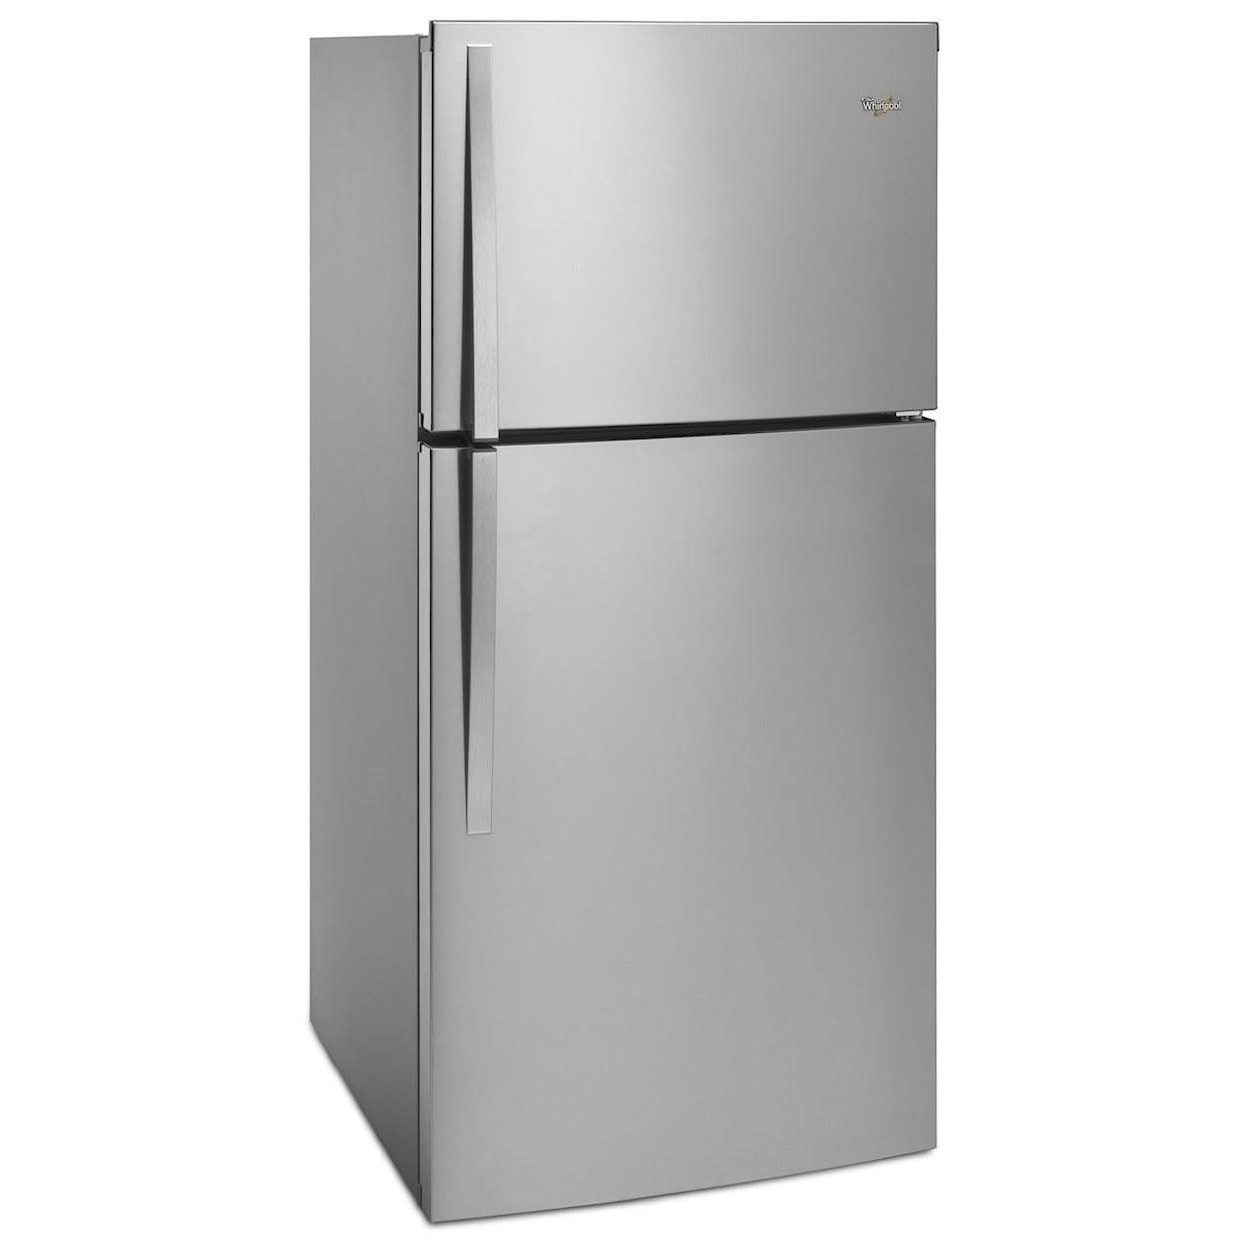 Whirlpool Top Mount Refrigerators 19.2 cu. ft., 30-In Top-Freezer Refrigerator